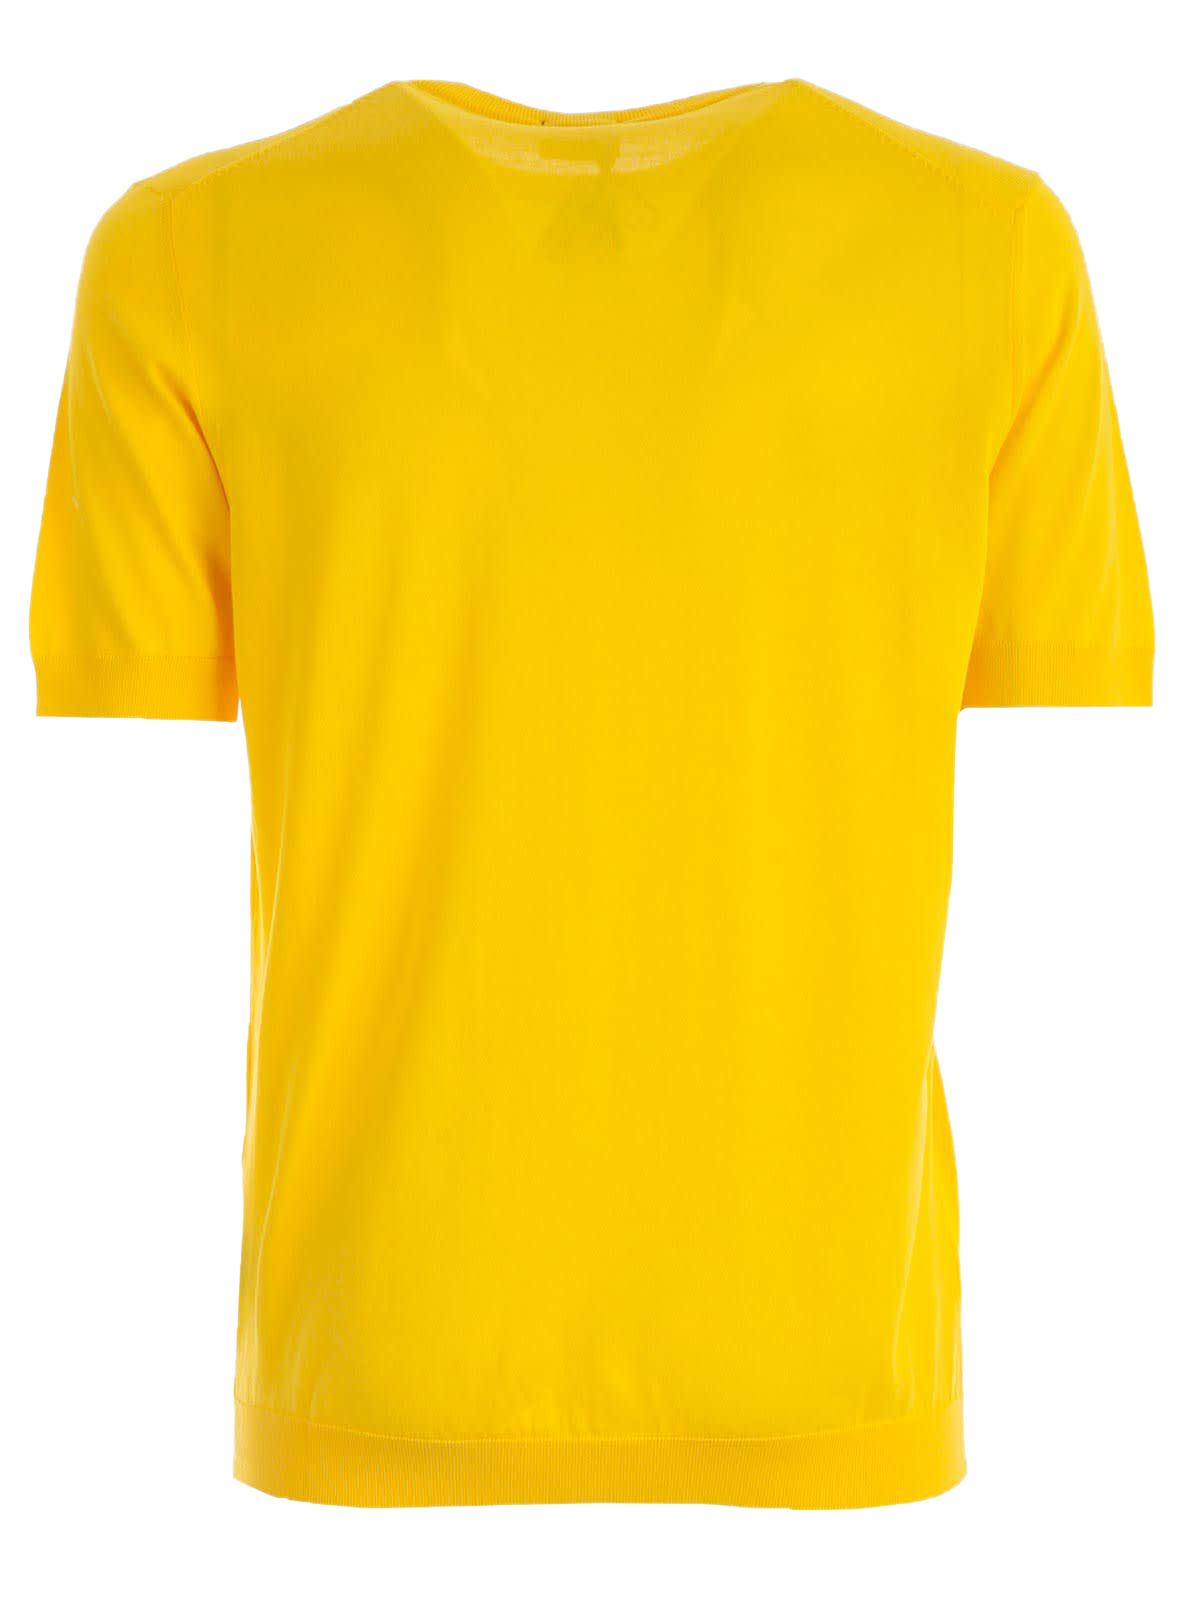 Imagem transparente t-shirt amarela simples